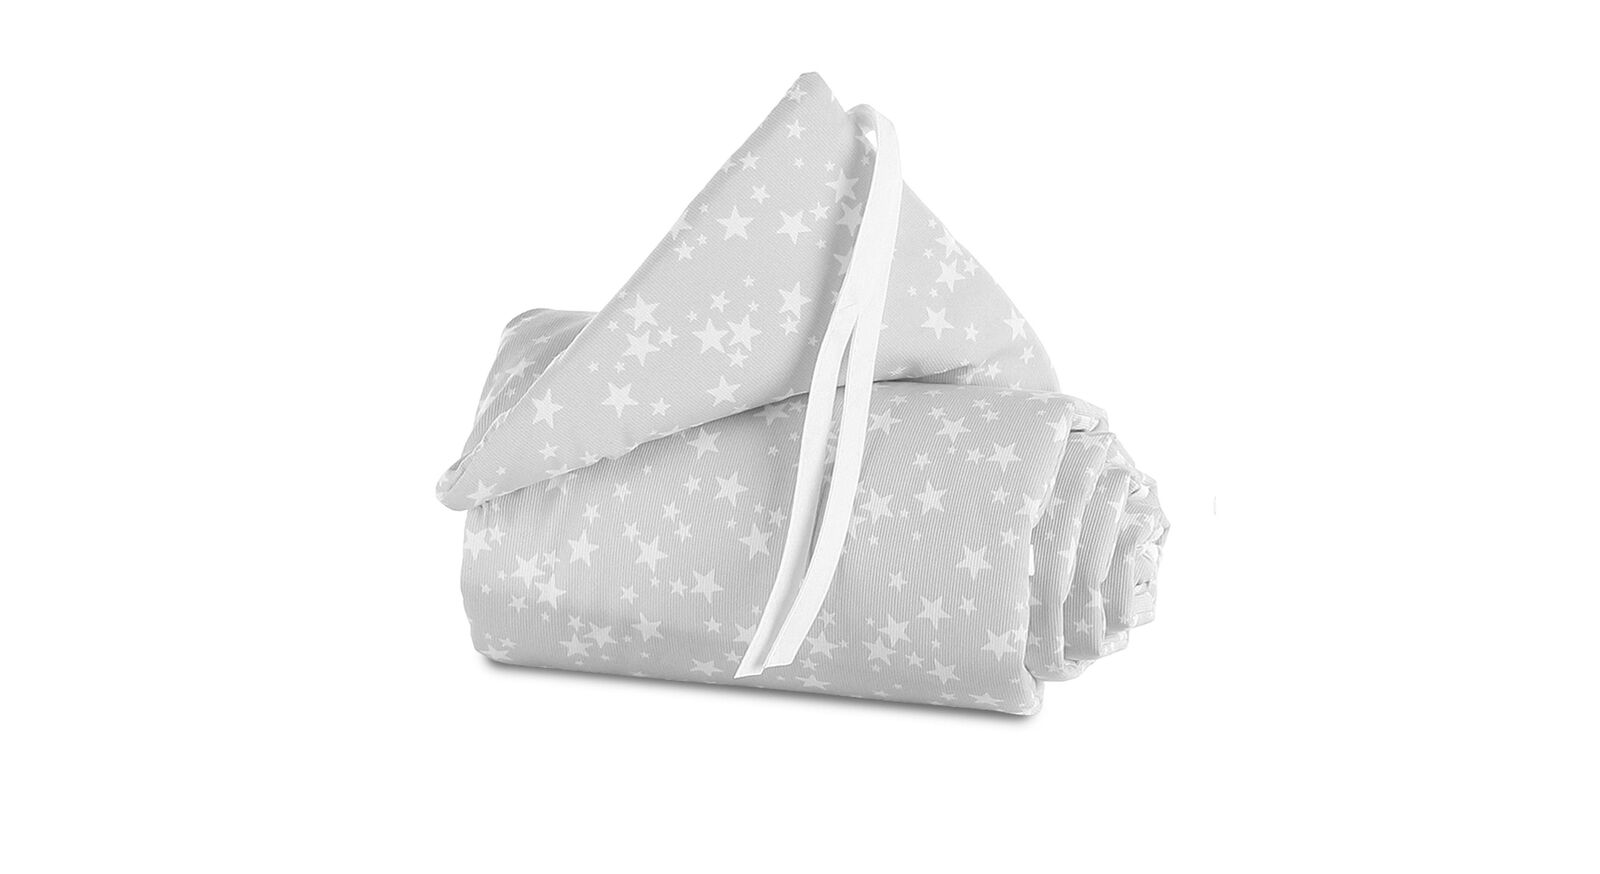 Himmel und Nestchen der Marke Babybay in Grau mit weißen Sternen